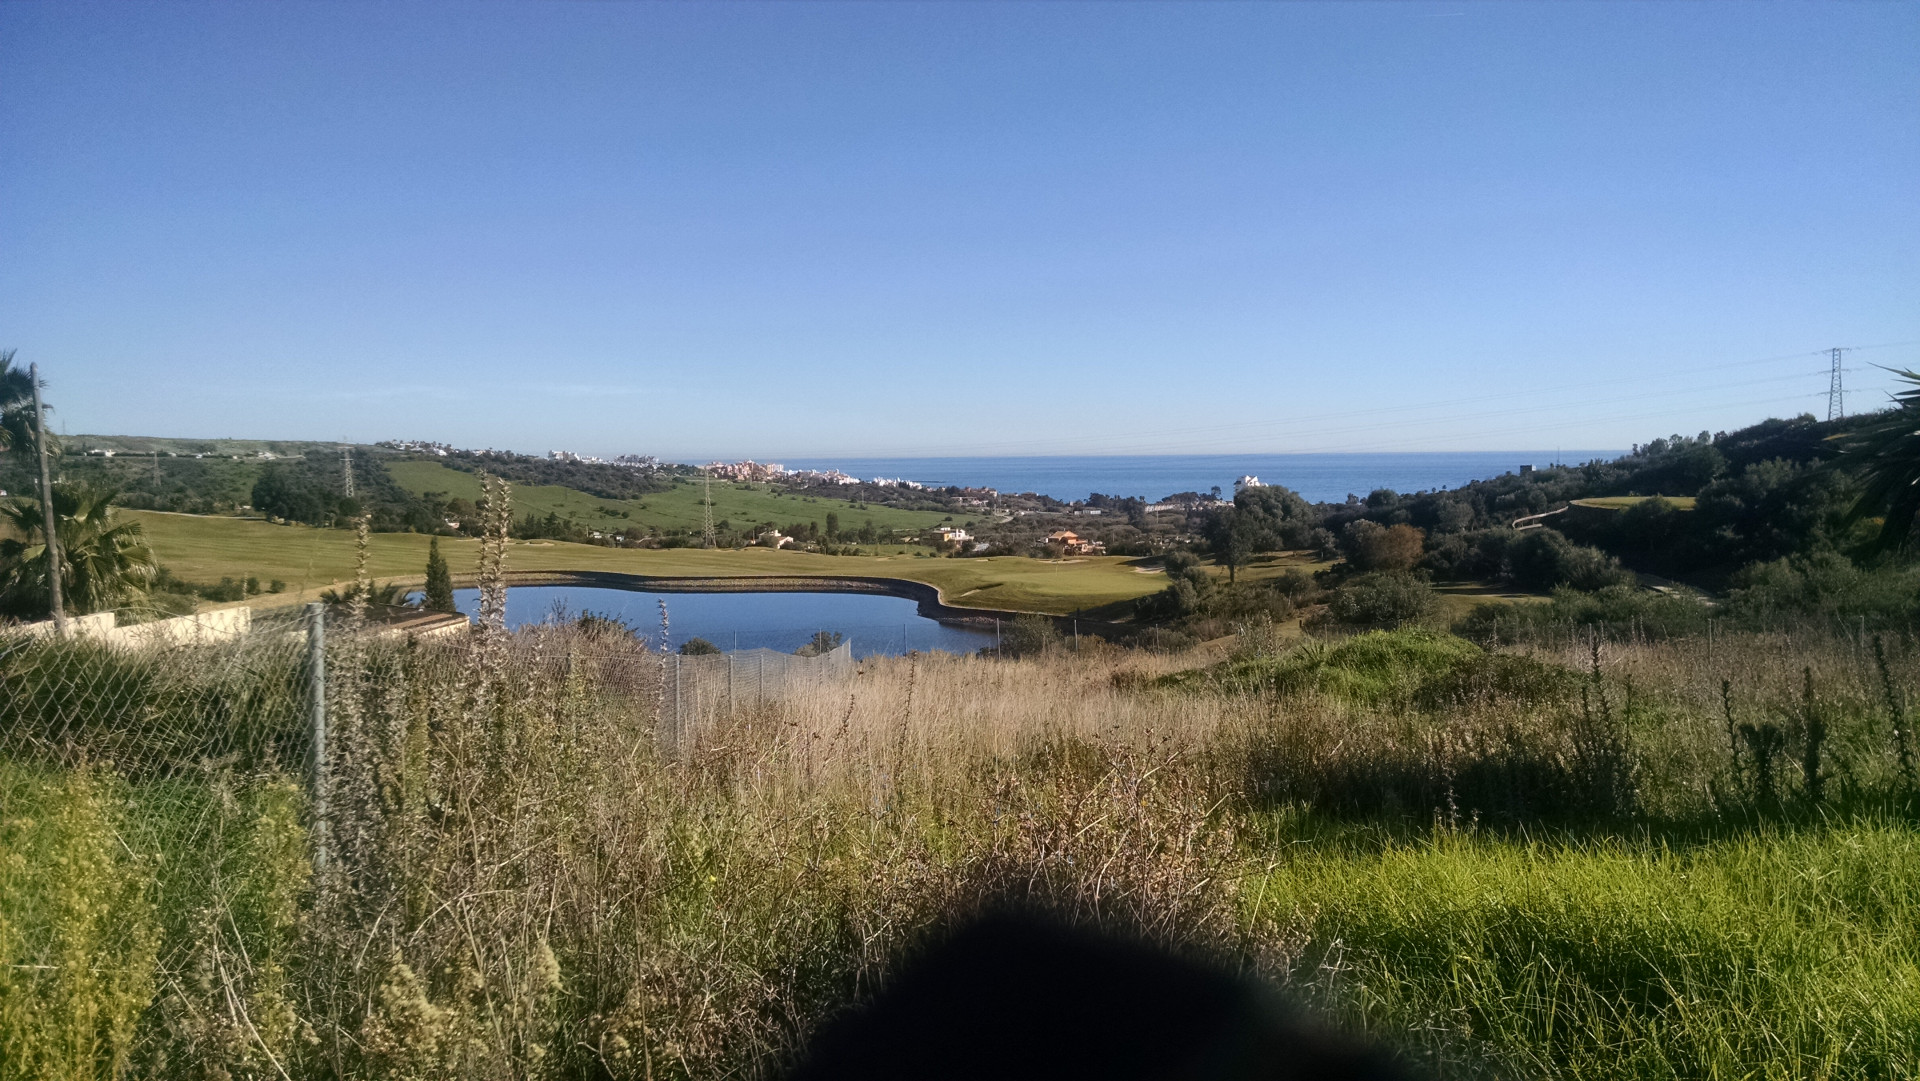 Contemporary frontline golf off plan villa with sea views in Estepona